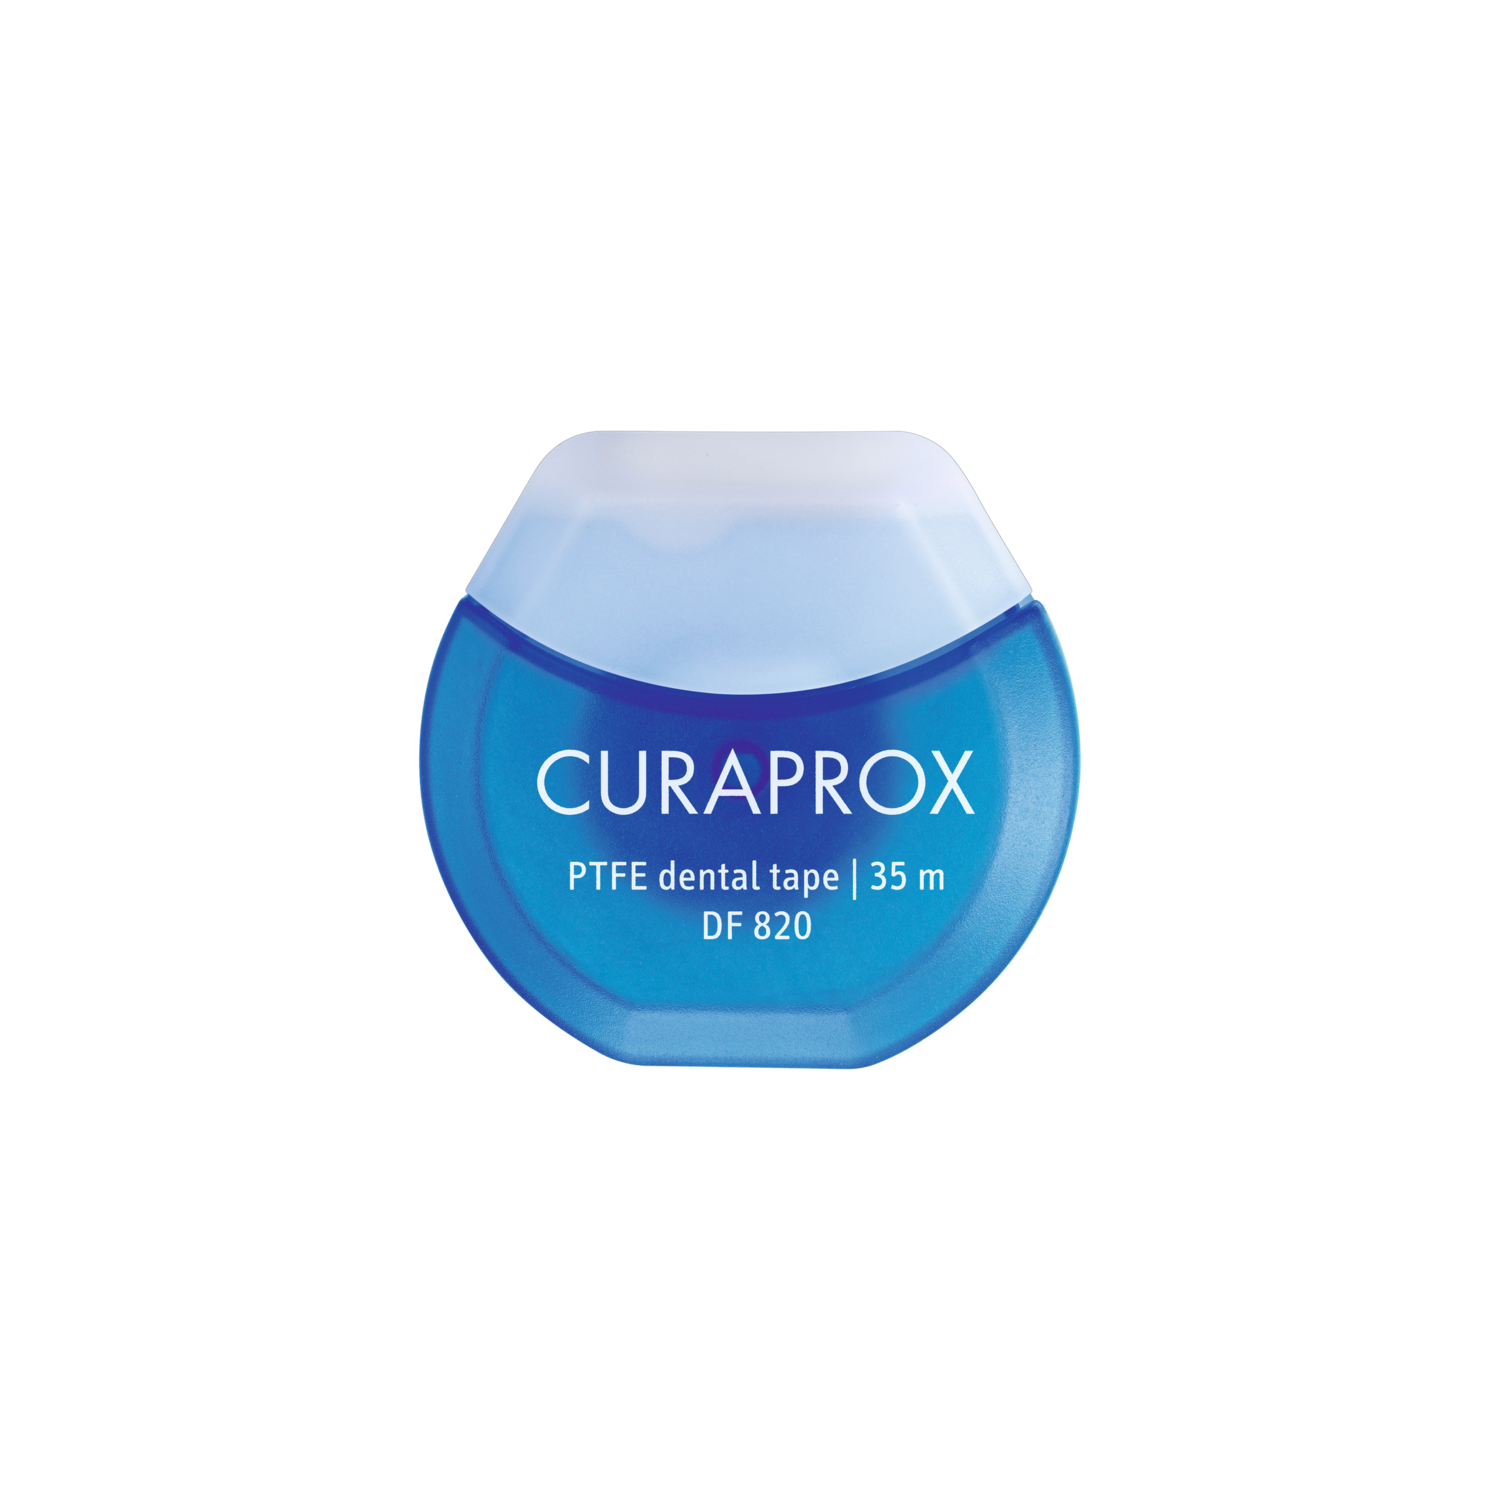 Curaprox - DF 820 dental tape